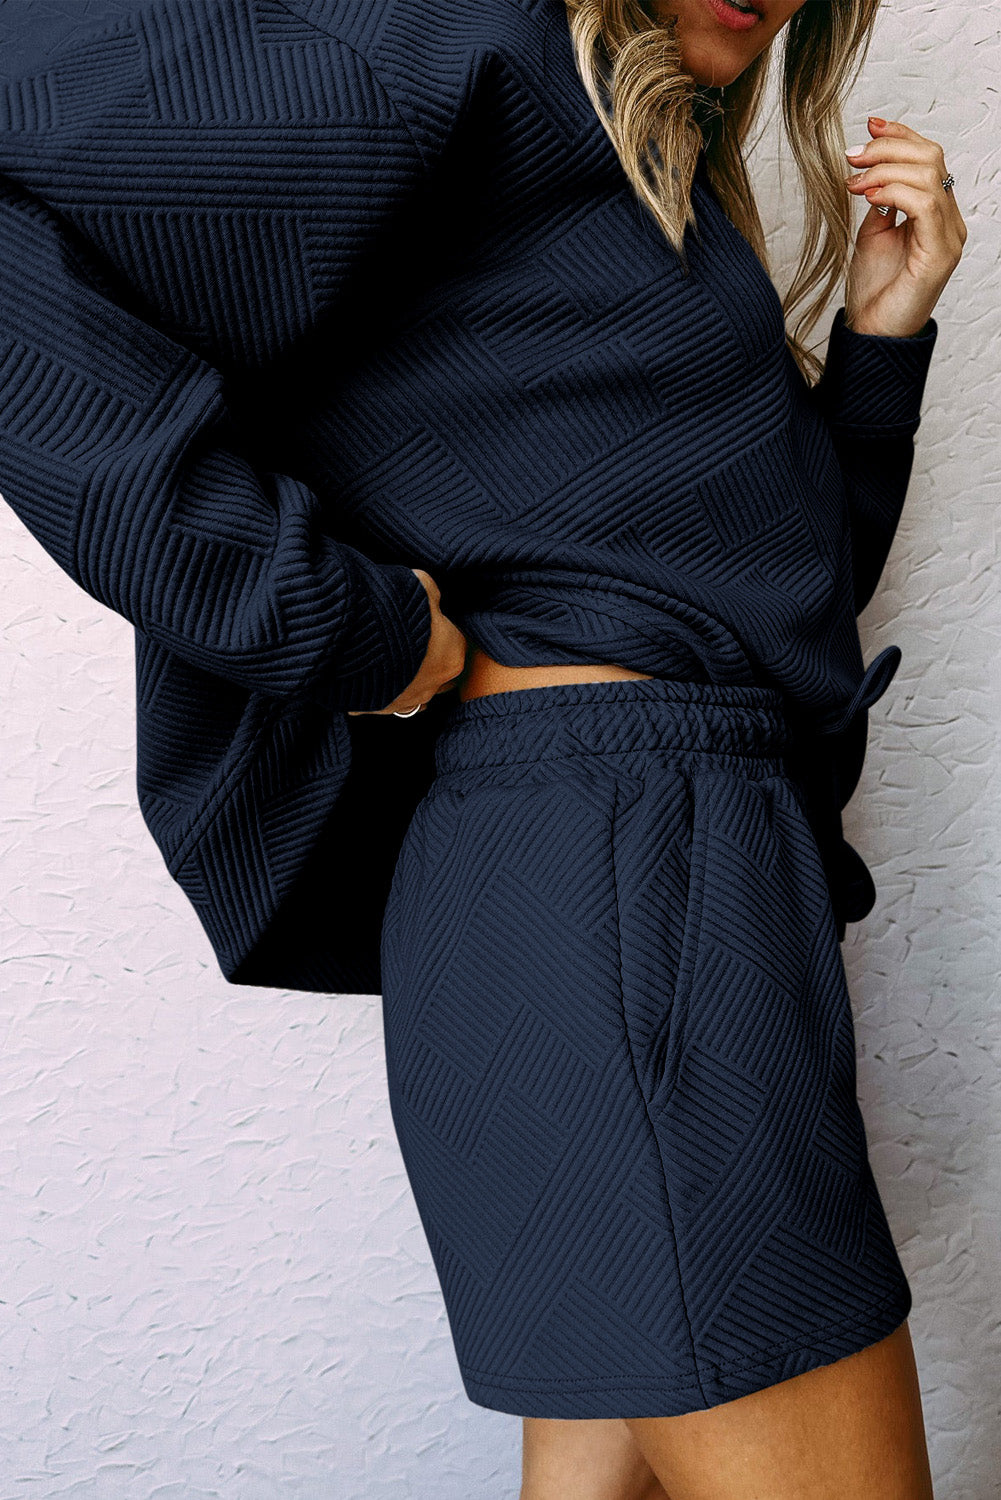 Textured Long Sleeve Top & Drawstring Shorts Set